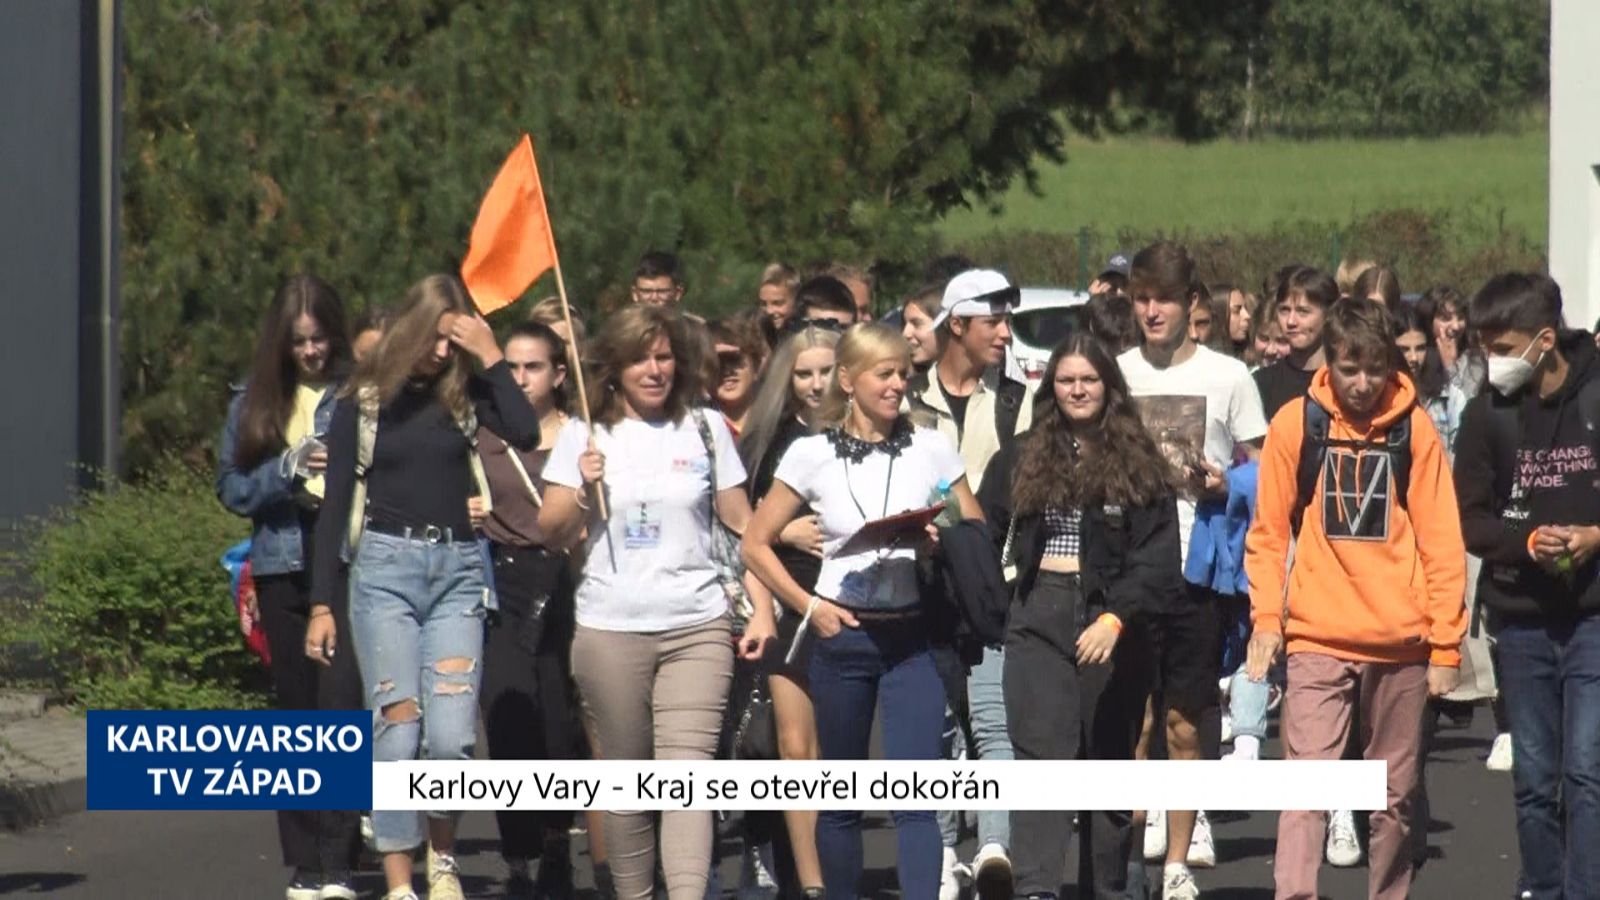 Karlovy Vary: Kraj se otevřel dokořán (TV Západ)